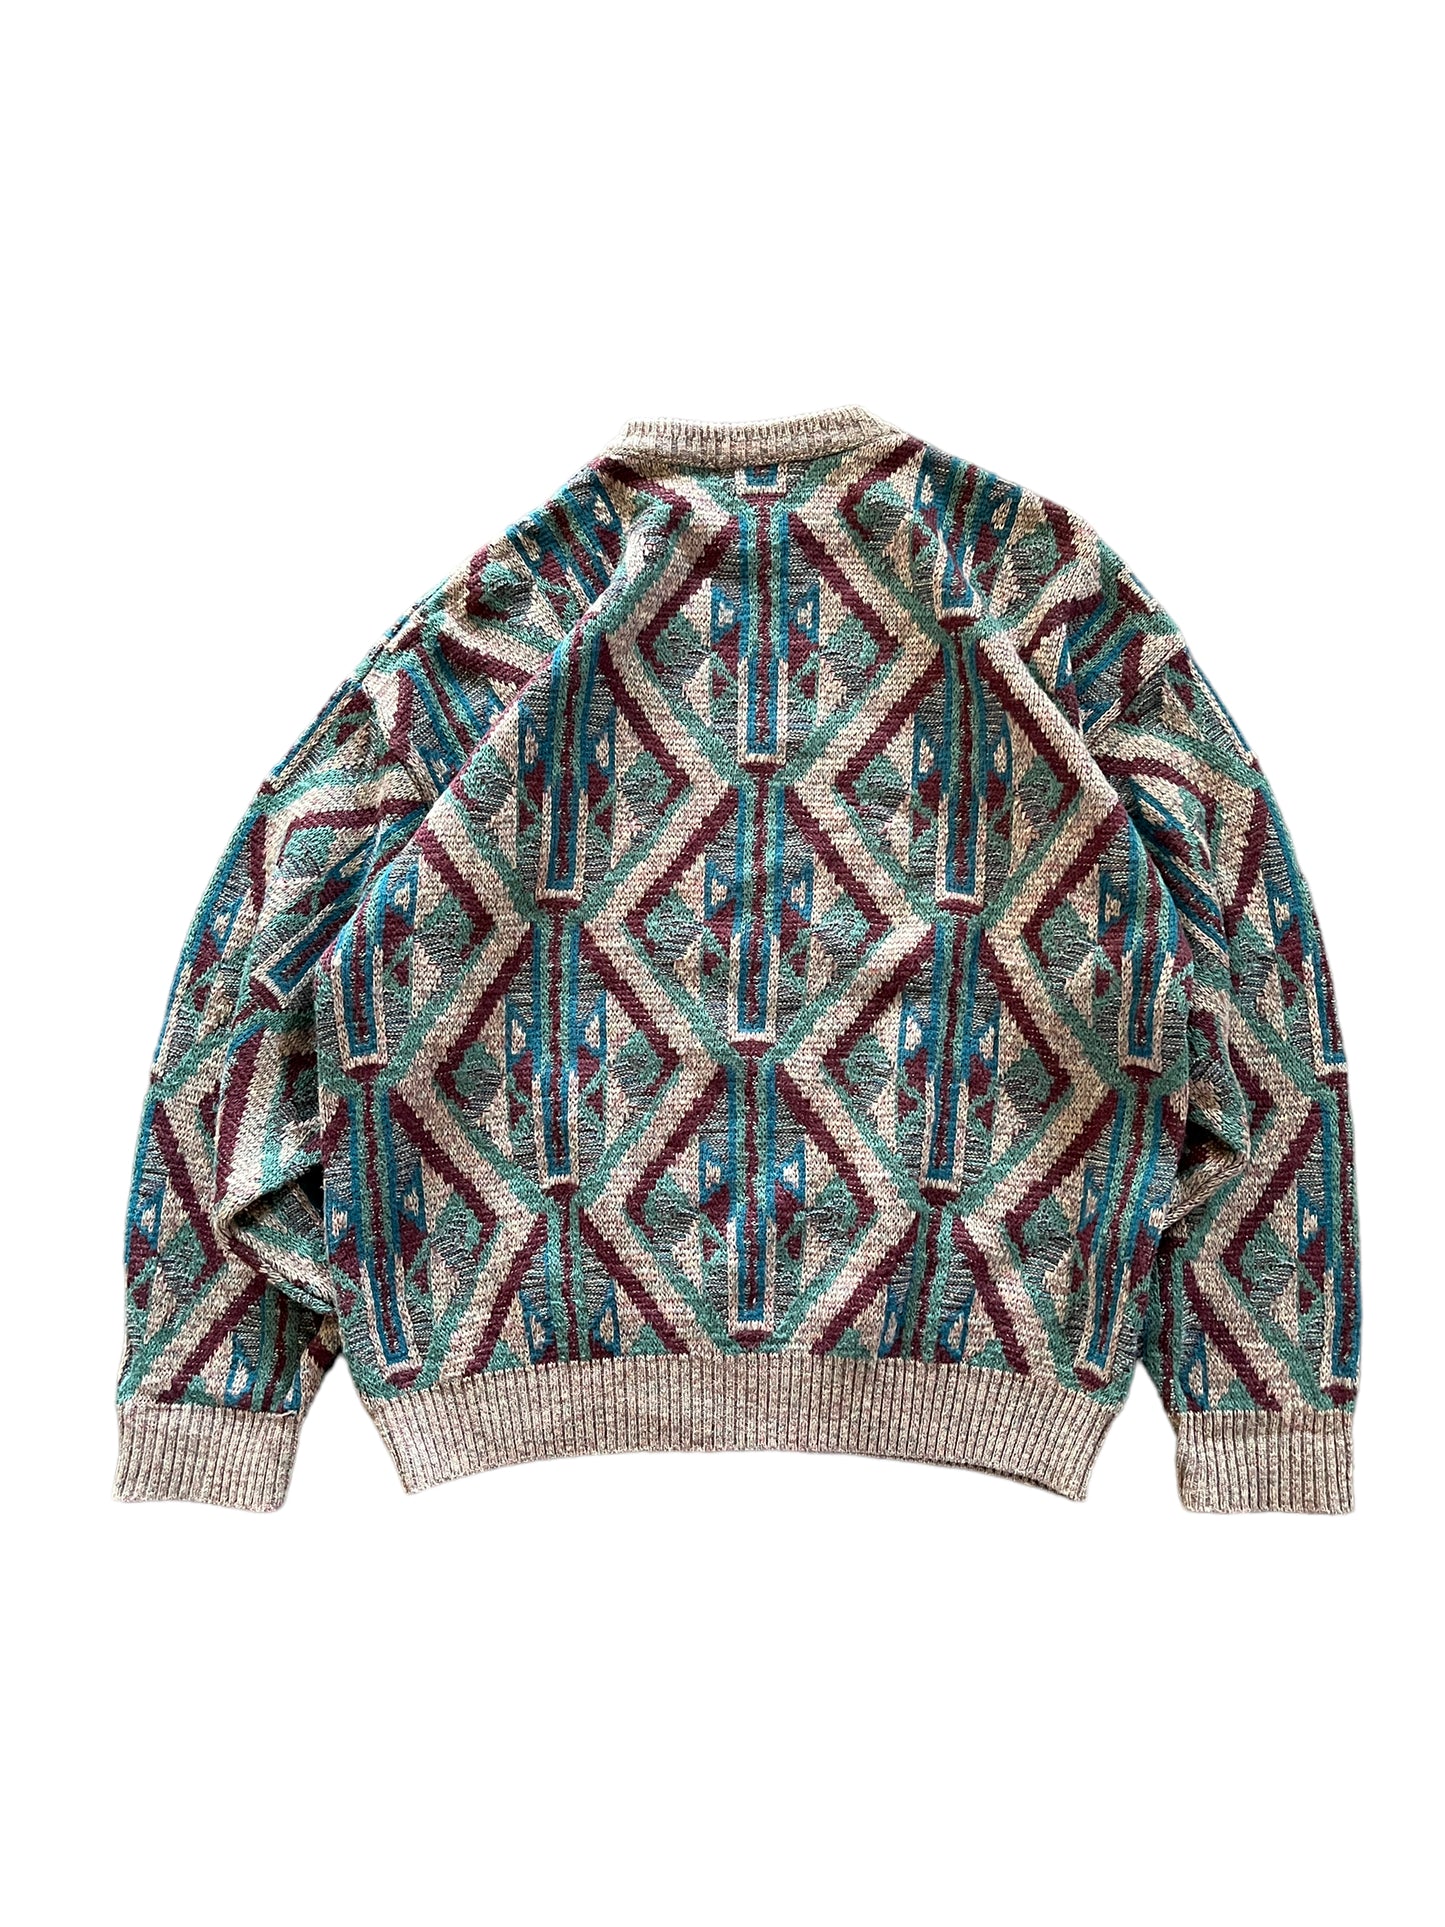 Vintage Akira Knit Sweater